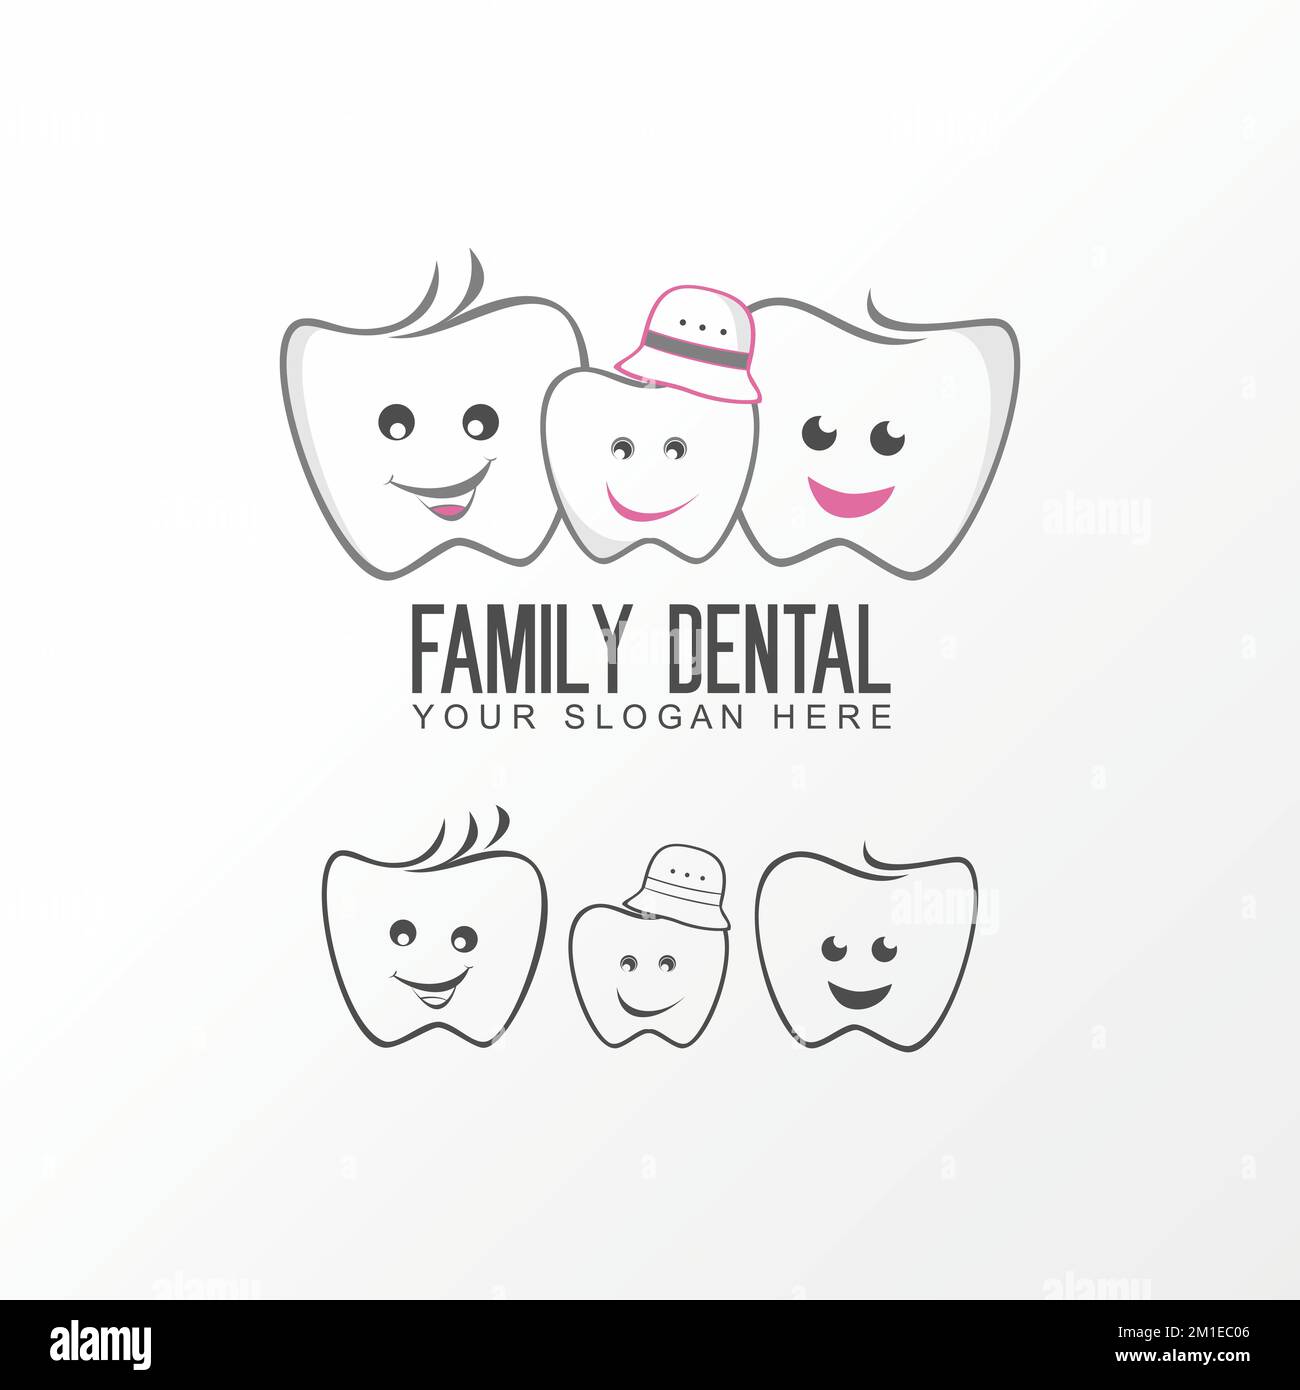 Dentaire, dents, dent caractère drôle de père, mère et enfant image graphique logo design abstrait concept vecteur stock lié à la santé ou à la famille Illustration de Vecteur